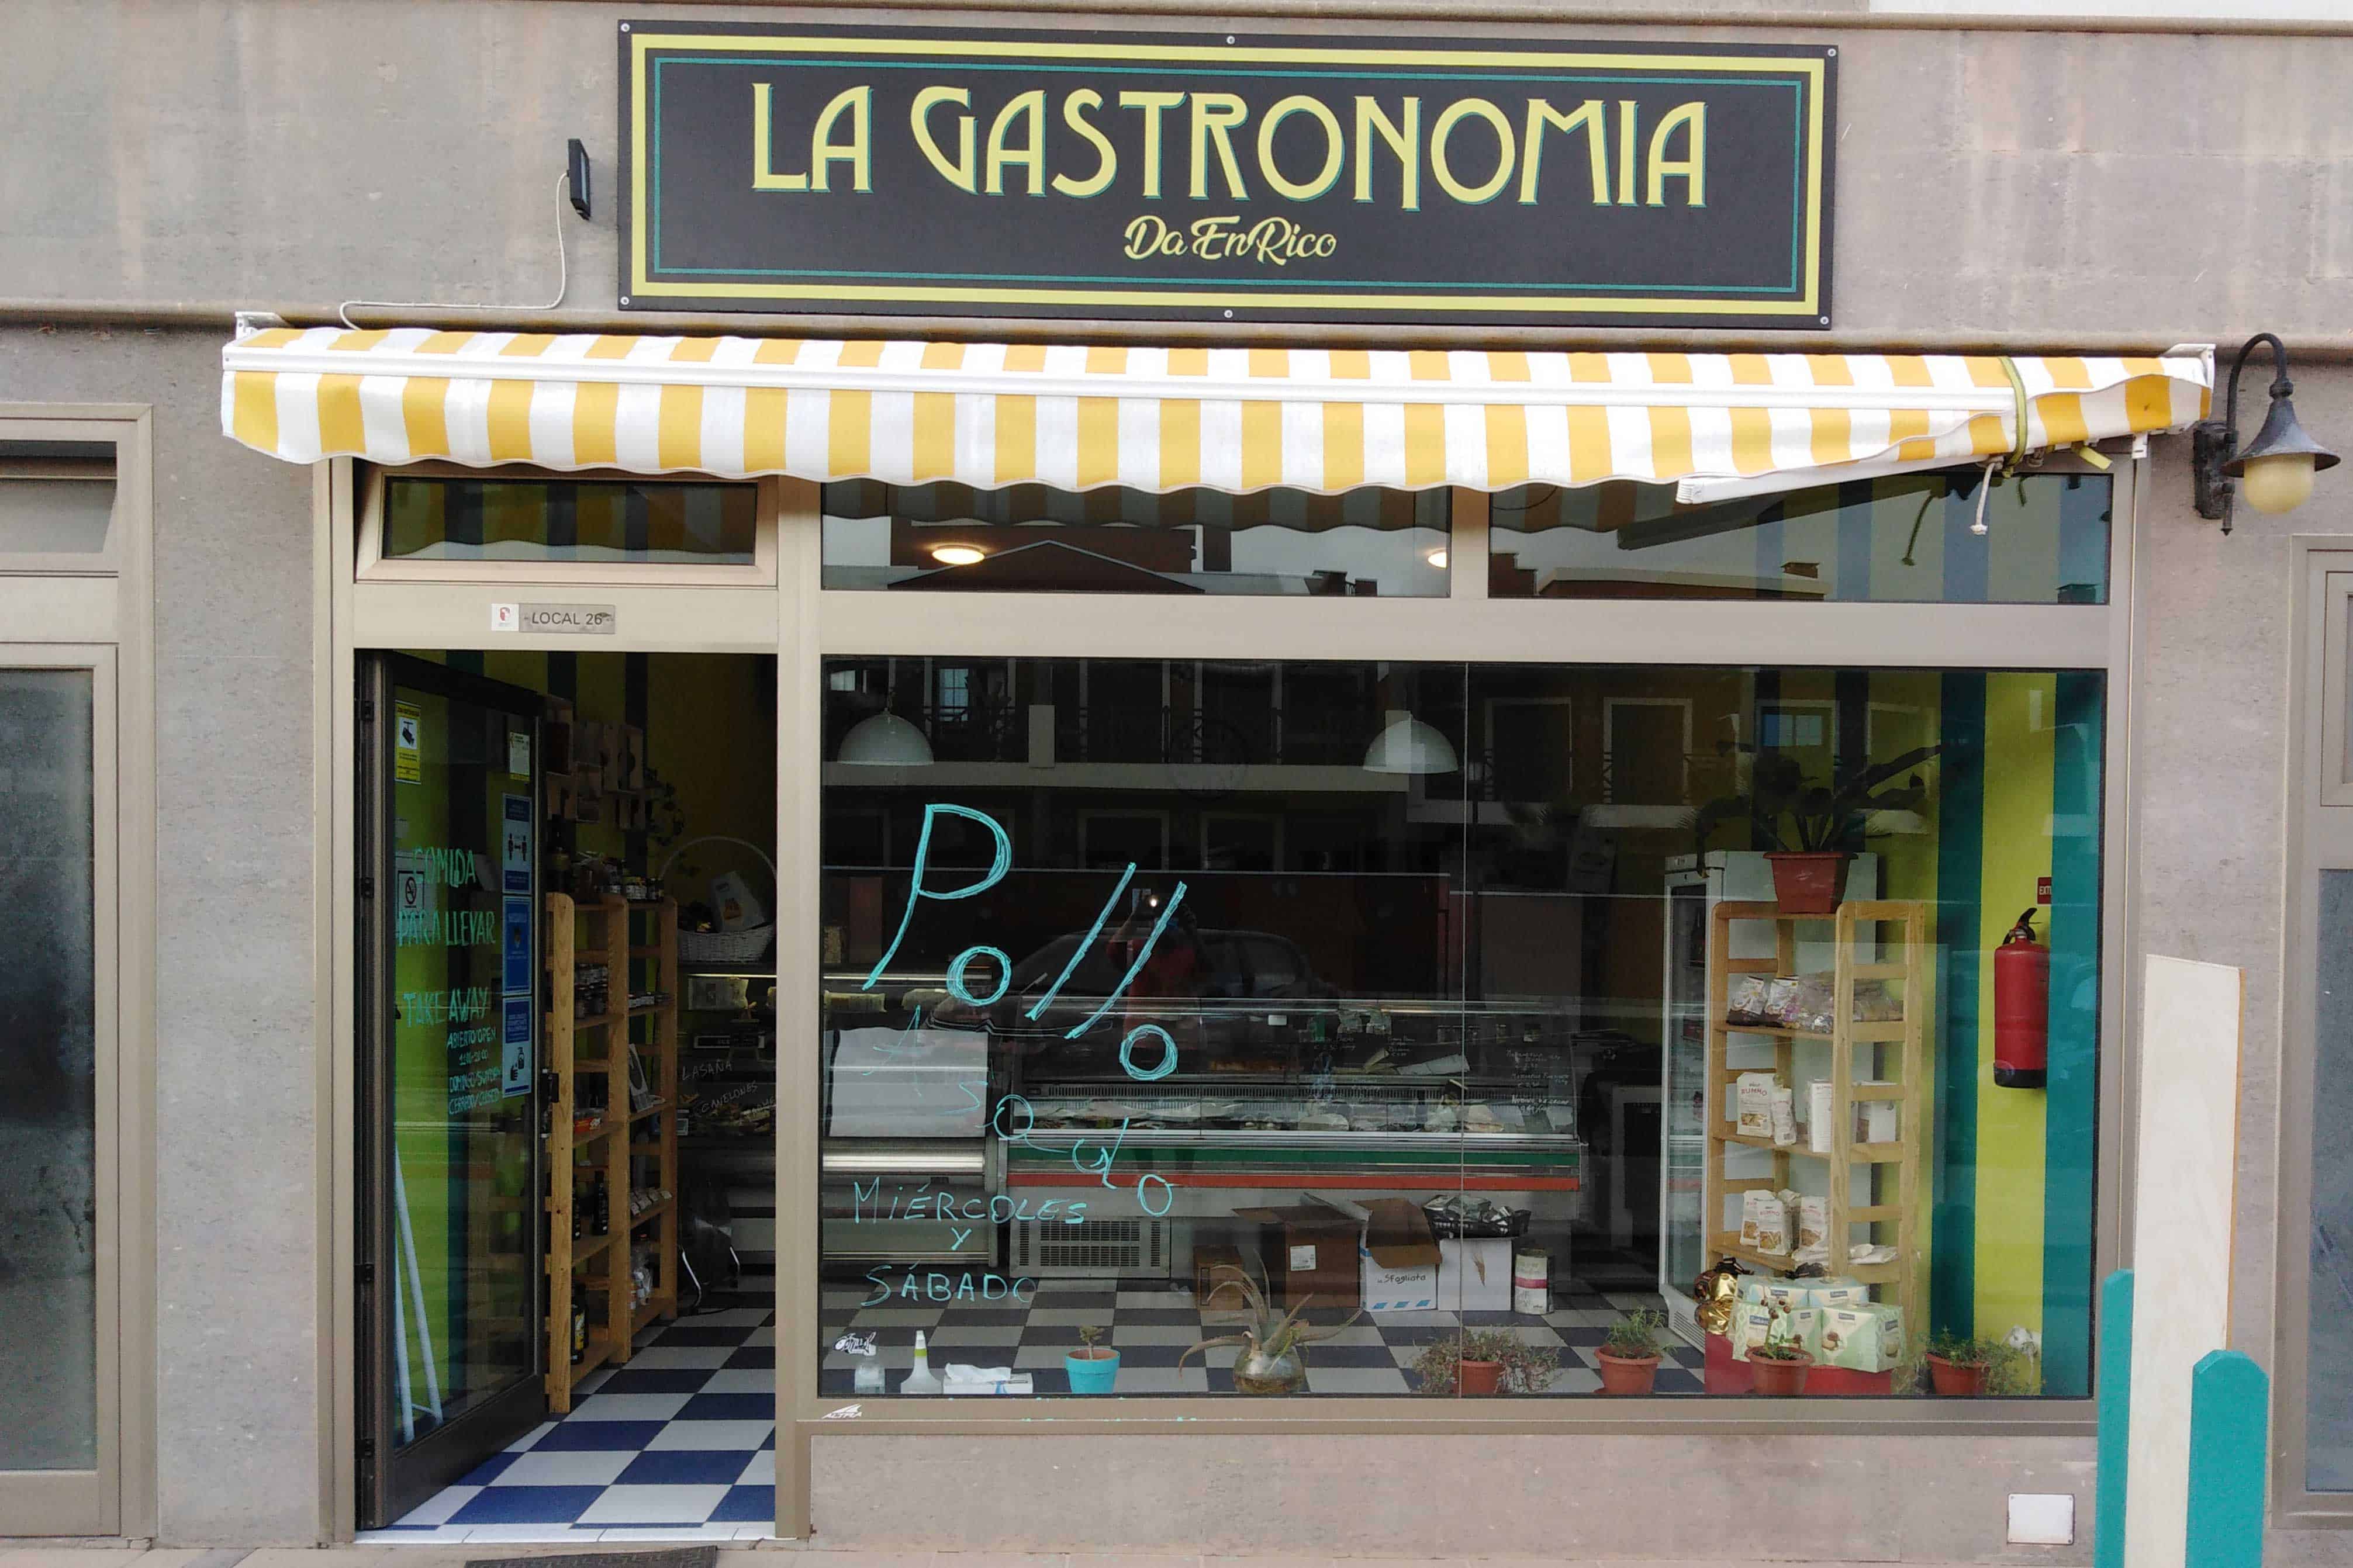 New Delicatessen - La Gastronomia 2